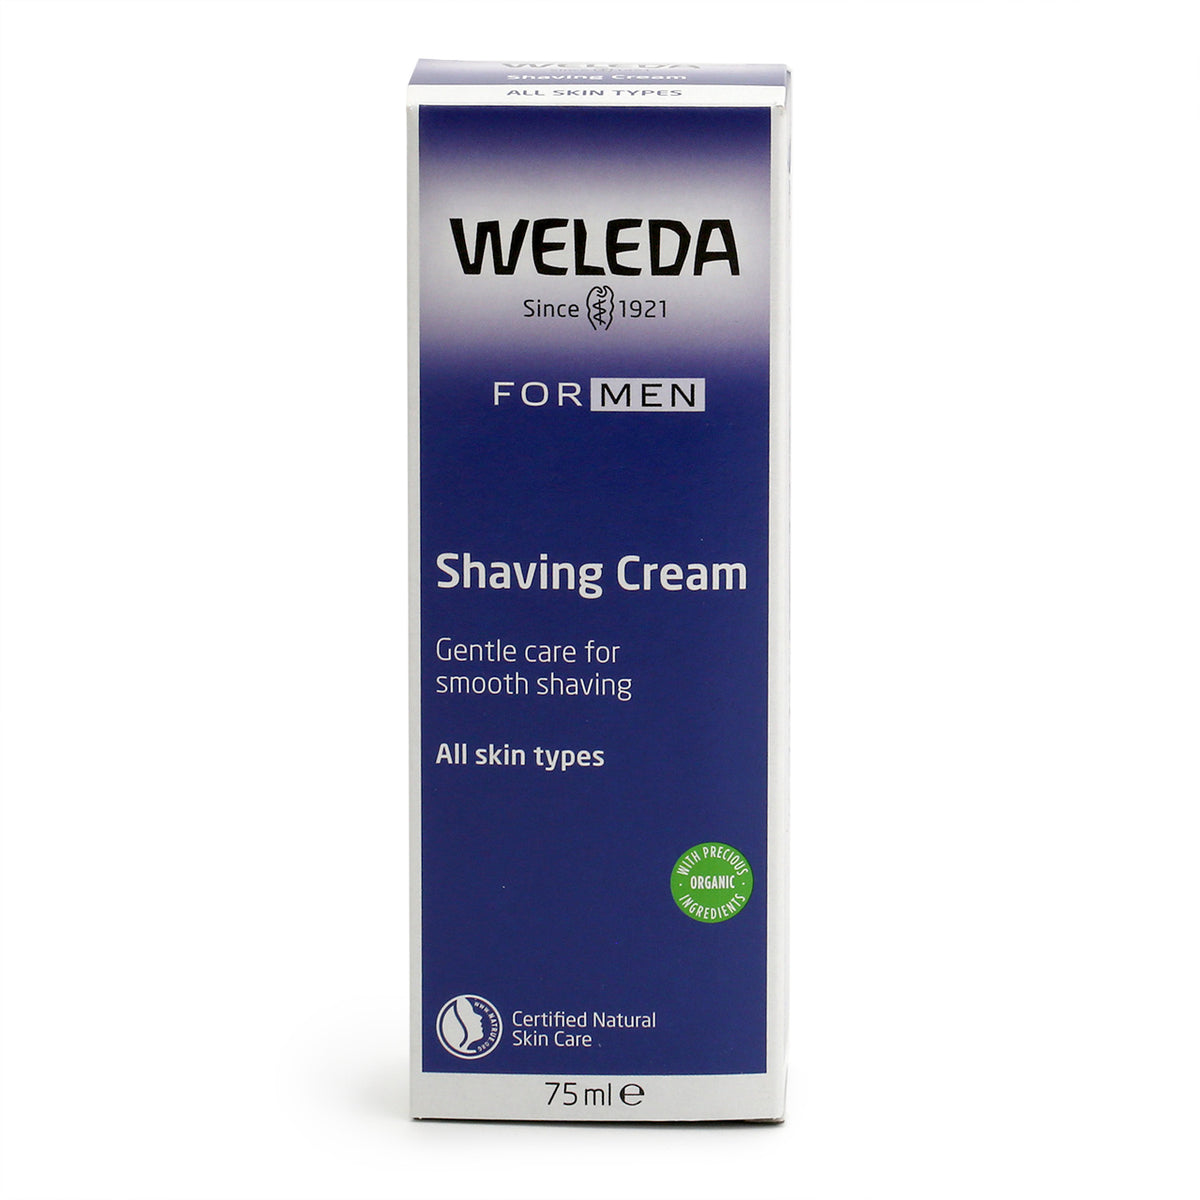 Weleda For Men Shaving Cream box